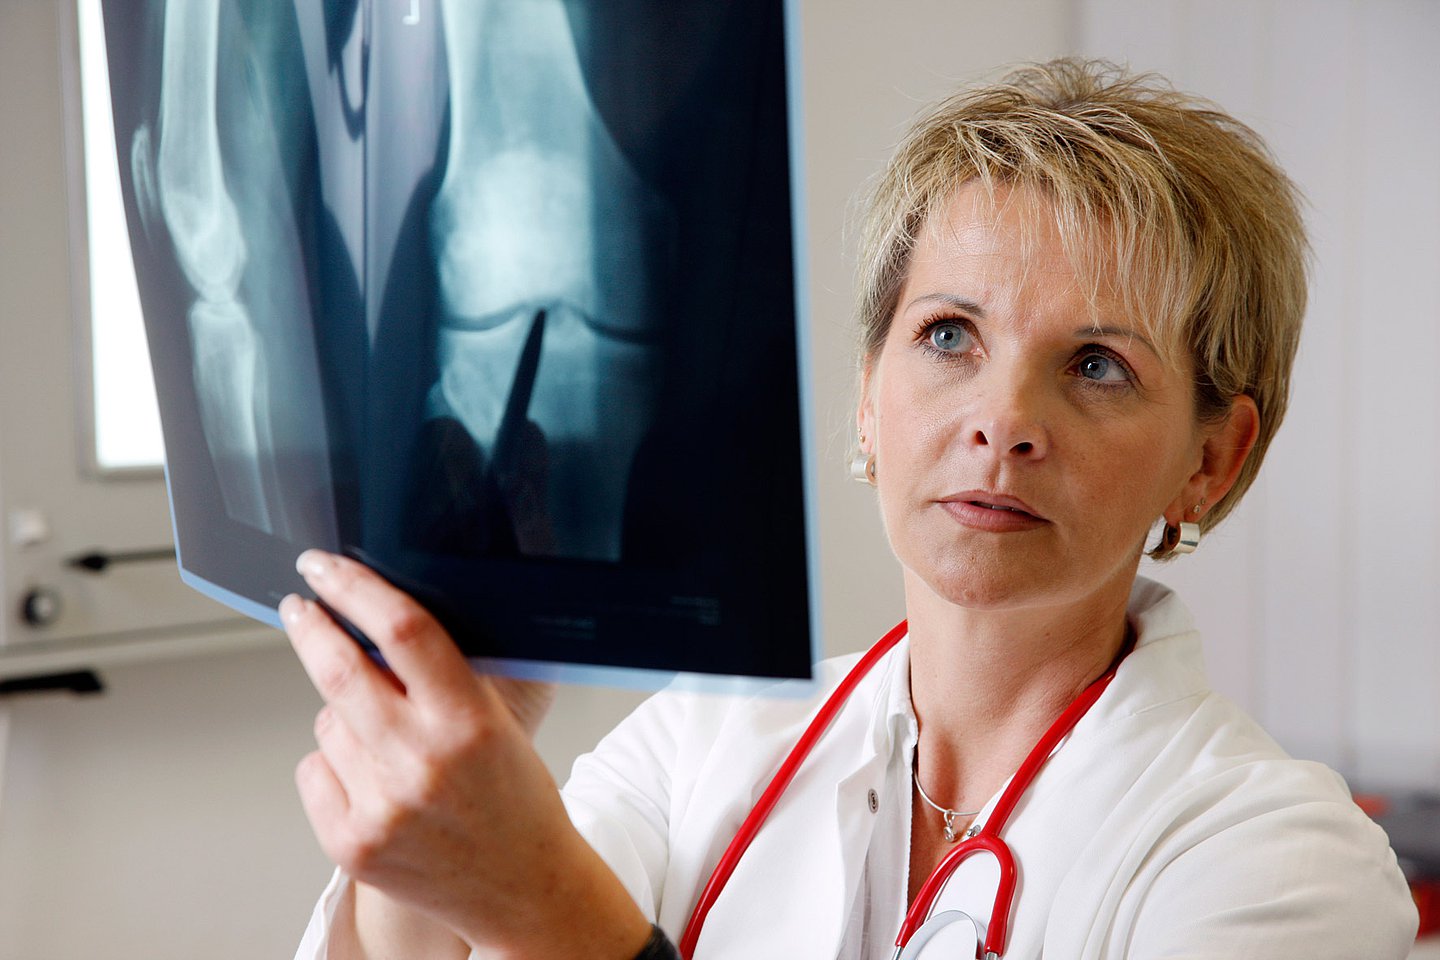 Foto: Eine Ärztin betrachtet ein Röntgenbild.